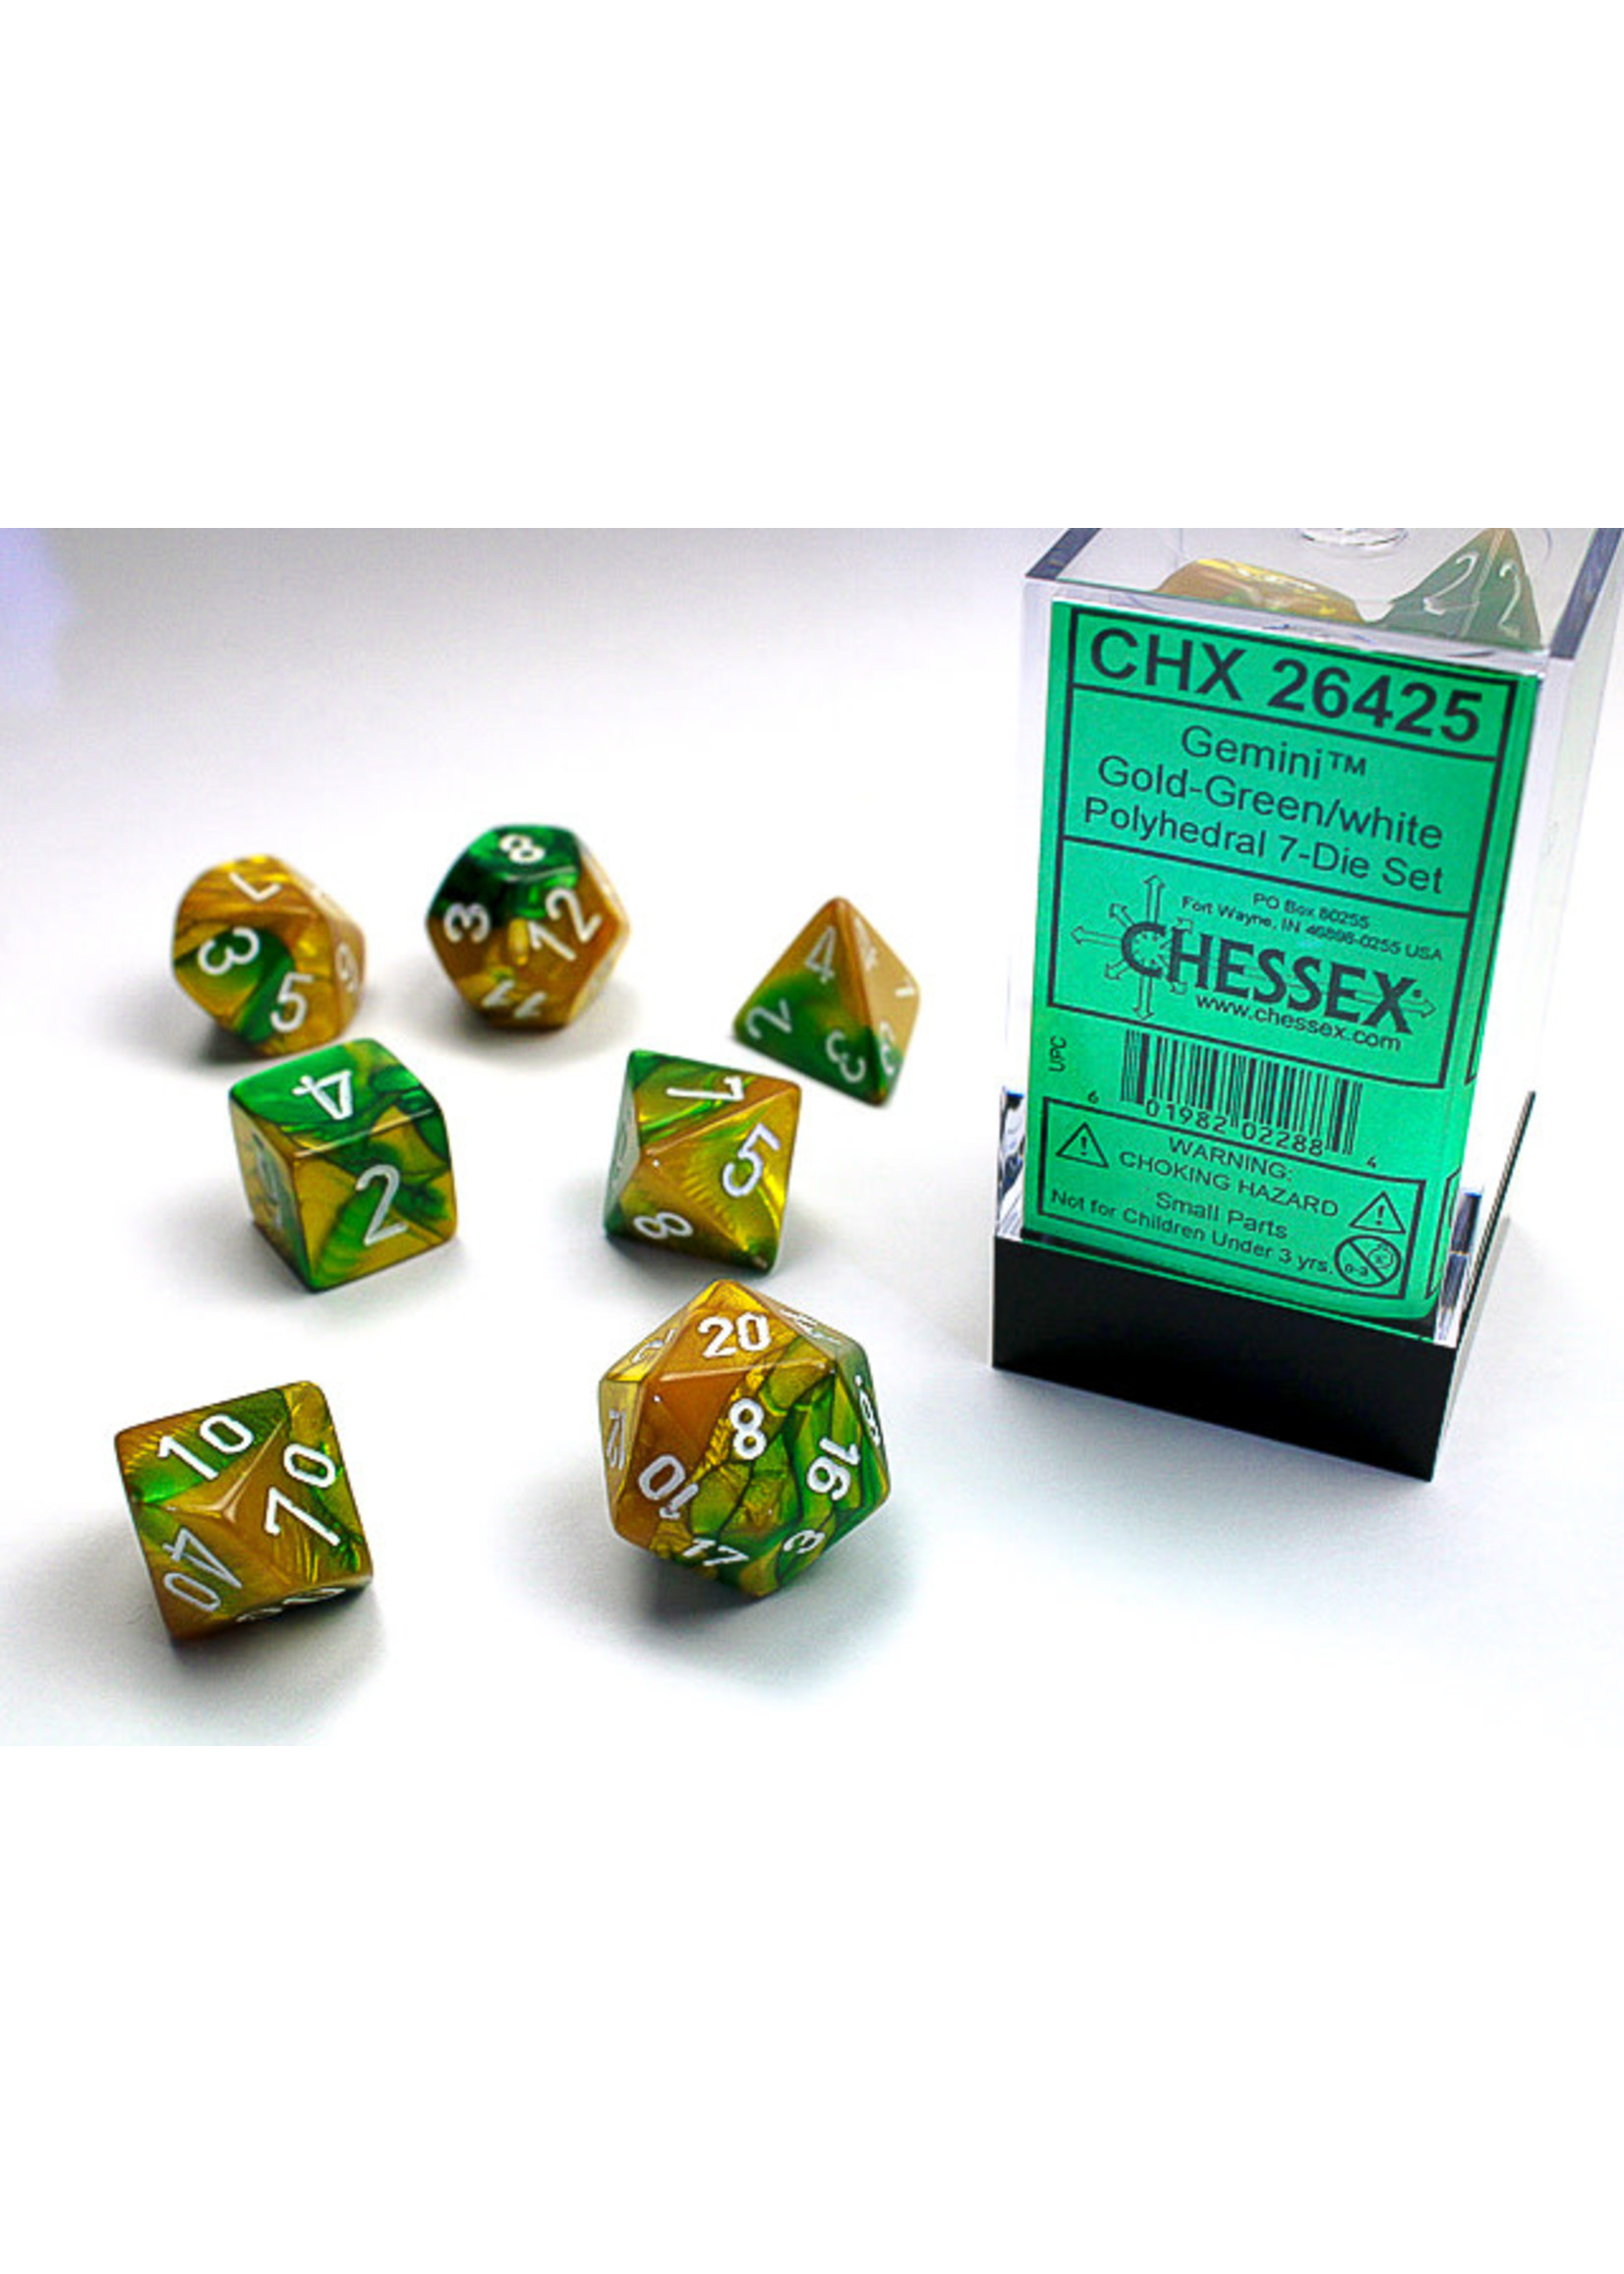 Chessex Gemini Gold-Green/white - Ensemble de 7 dés polyhédriques de Chessex